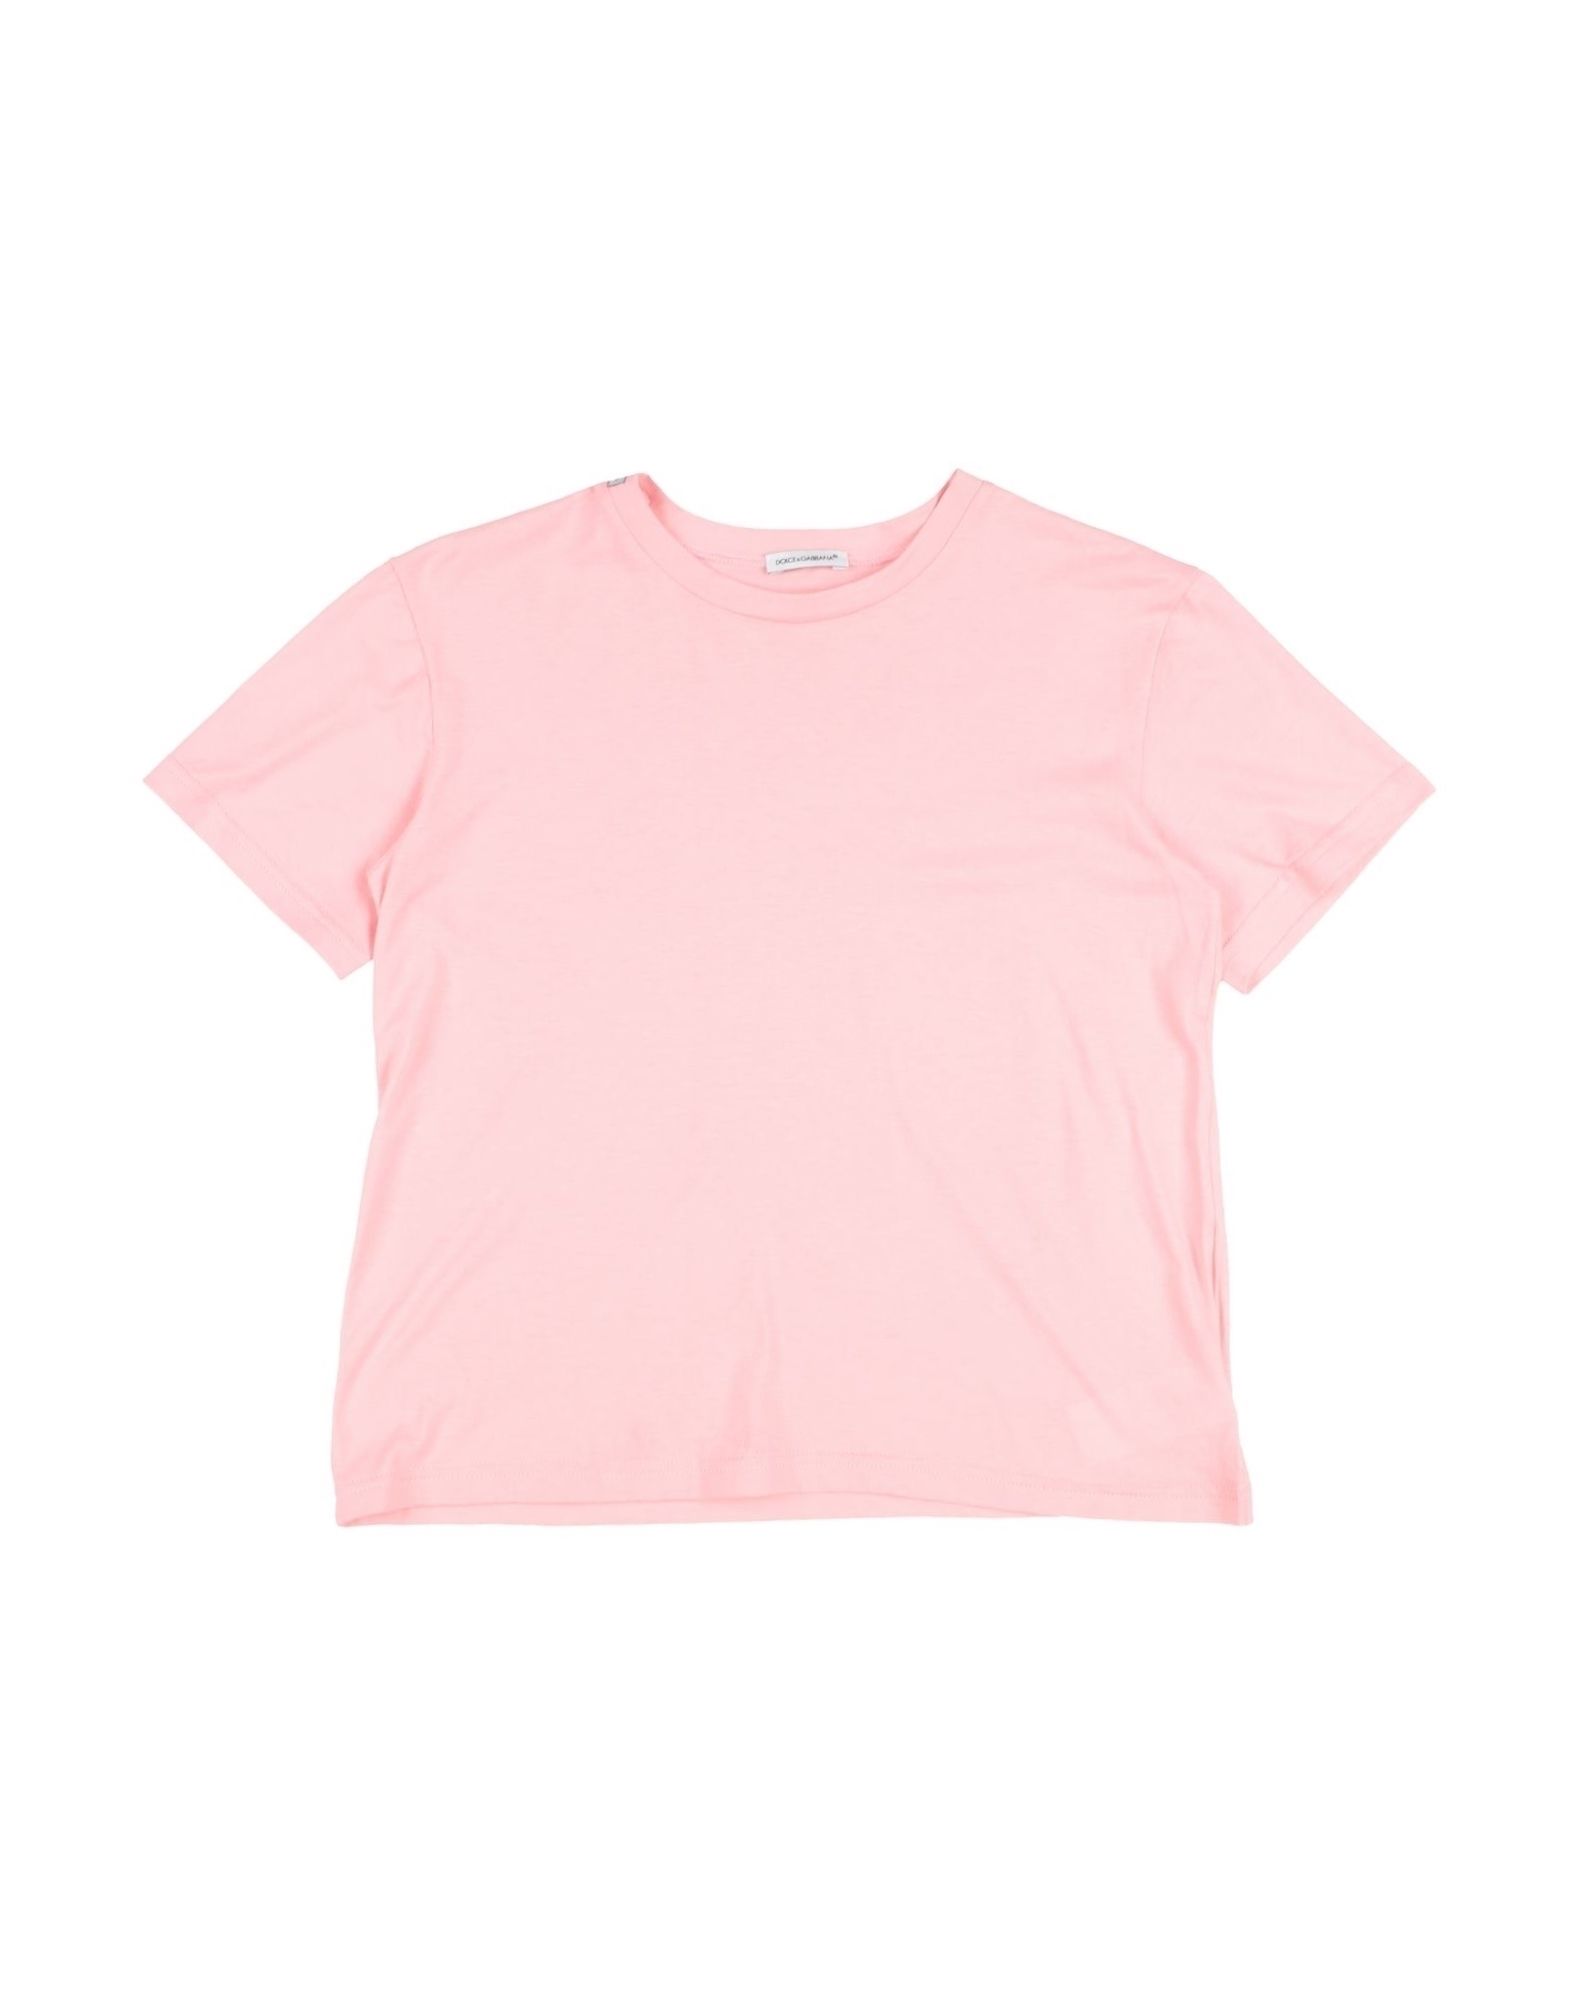 Dolce & Gabbana Kids' T-shirts In Pink